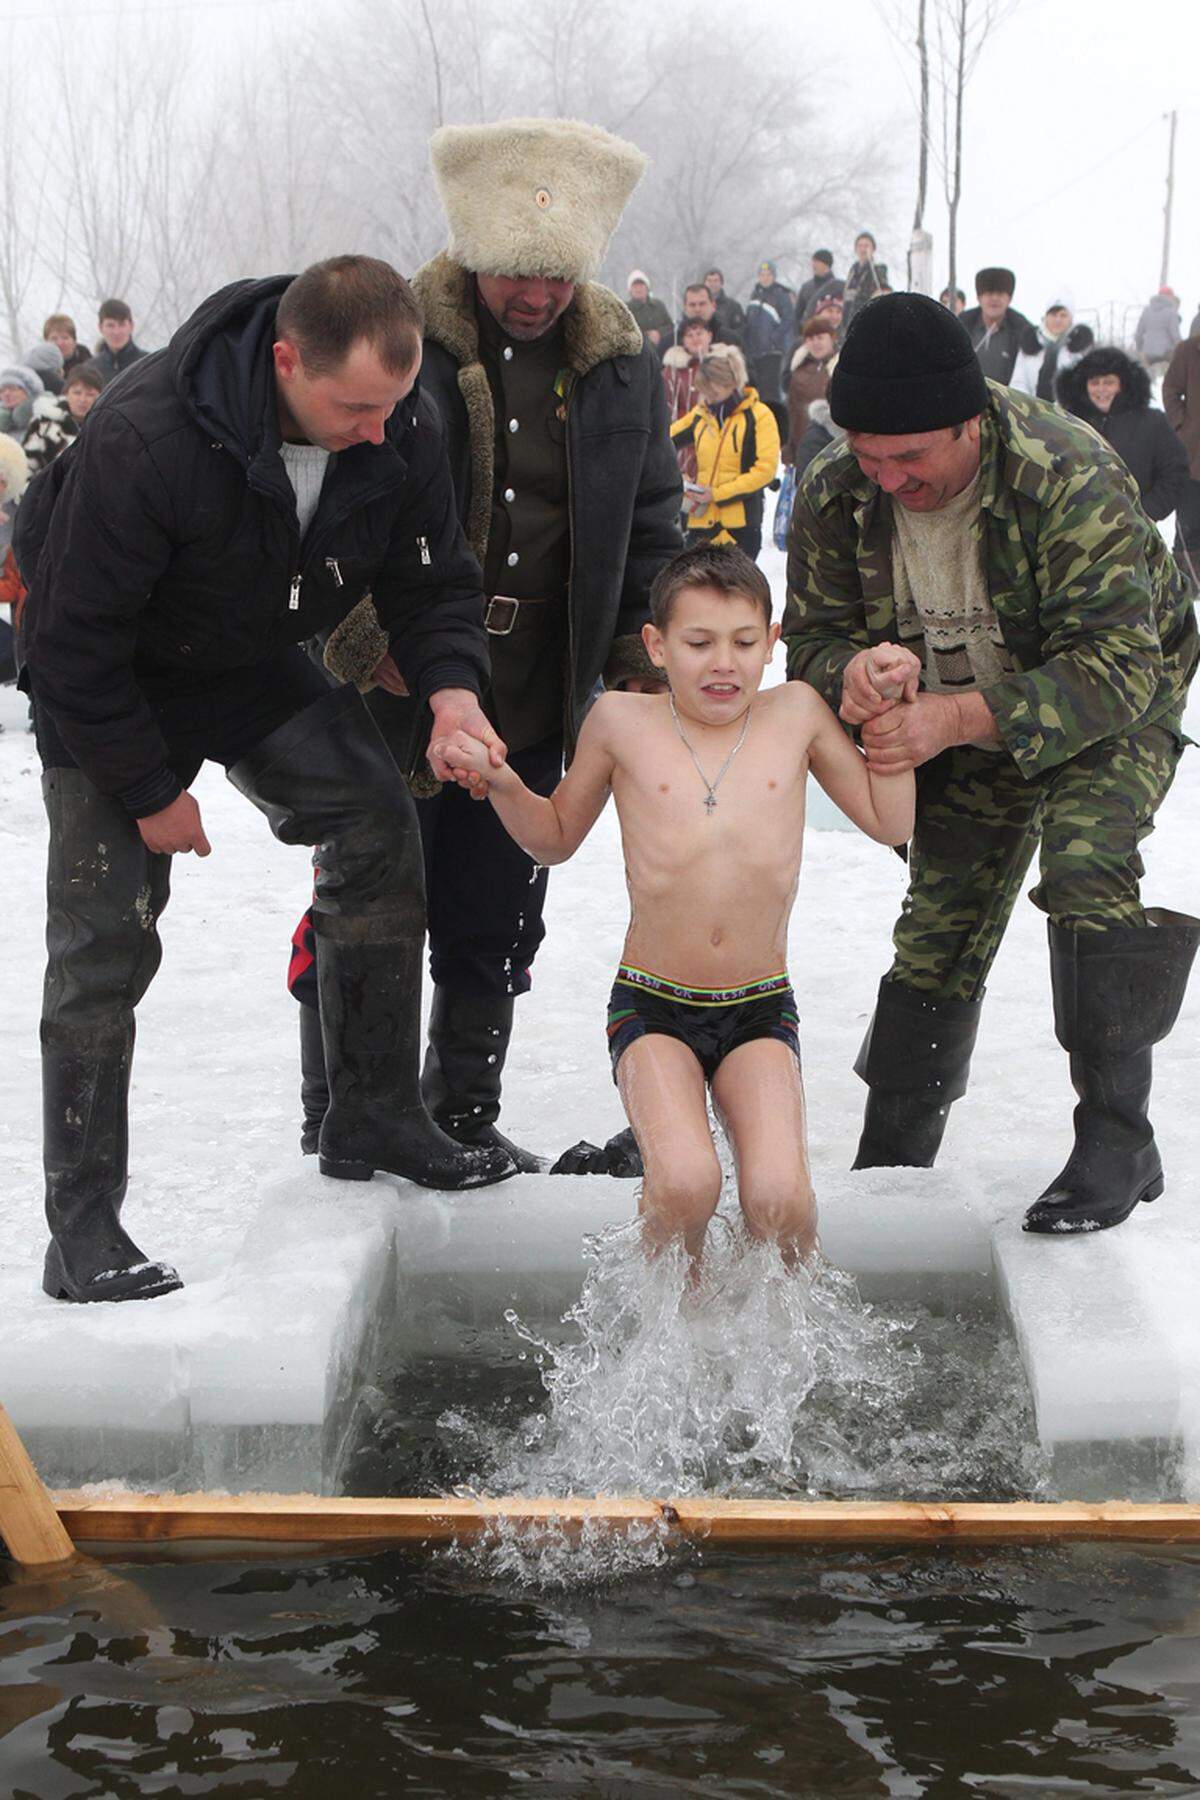 Hier in Bischkek, Kasachstan, werden die jüngeren von Helfern kurz ins Wasser getaucht.